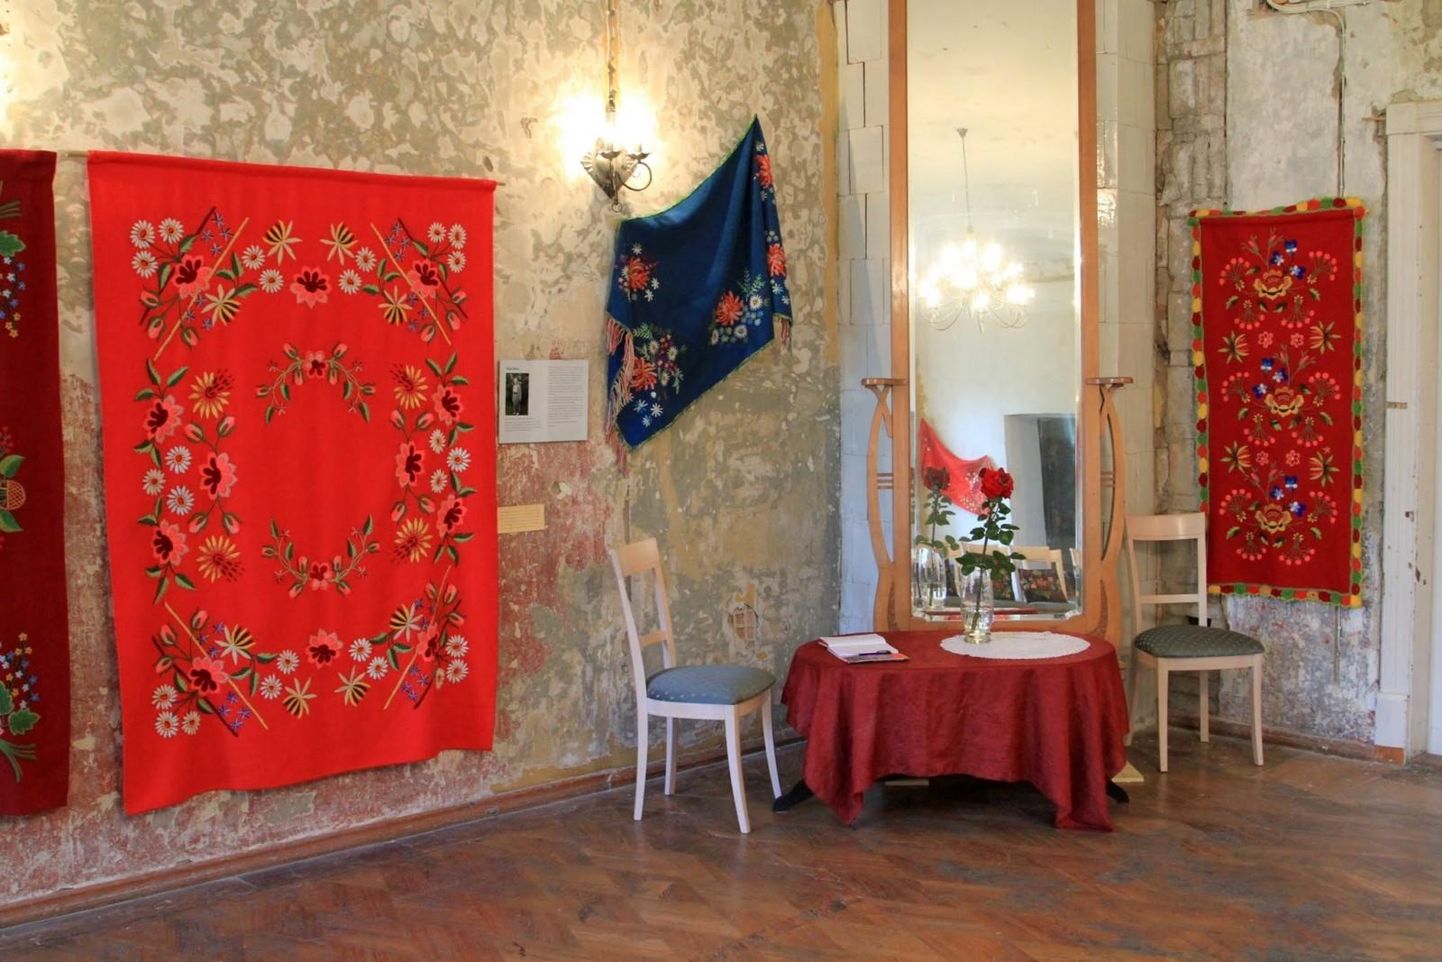 Lihula mõisas asuva muuseumi renoveeritud saalid avatakse näitusega, mis tutvustab Lihula ajaloolist lilltikandit.